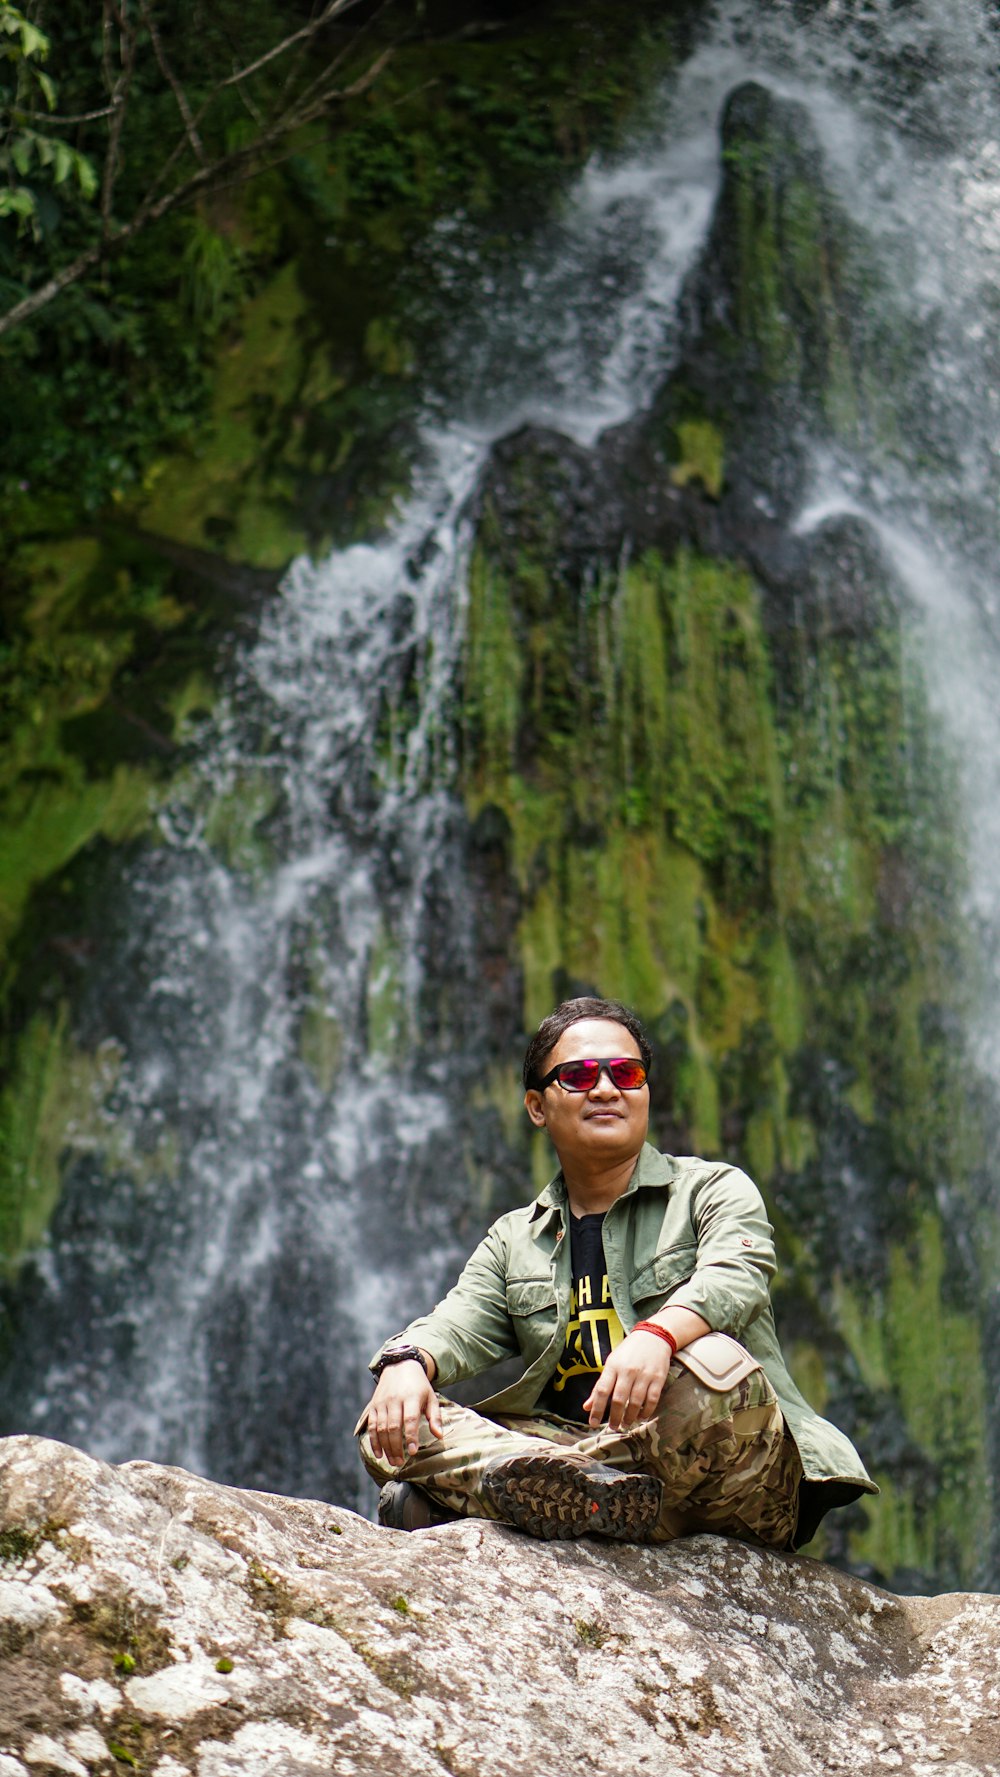 Homme en veste verte portant des lunettes de soleil noires près des chutes d’eau pendant la journée